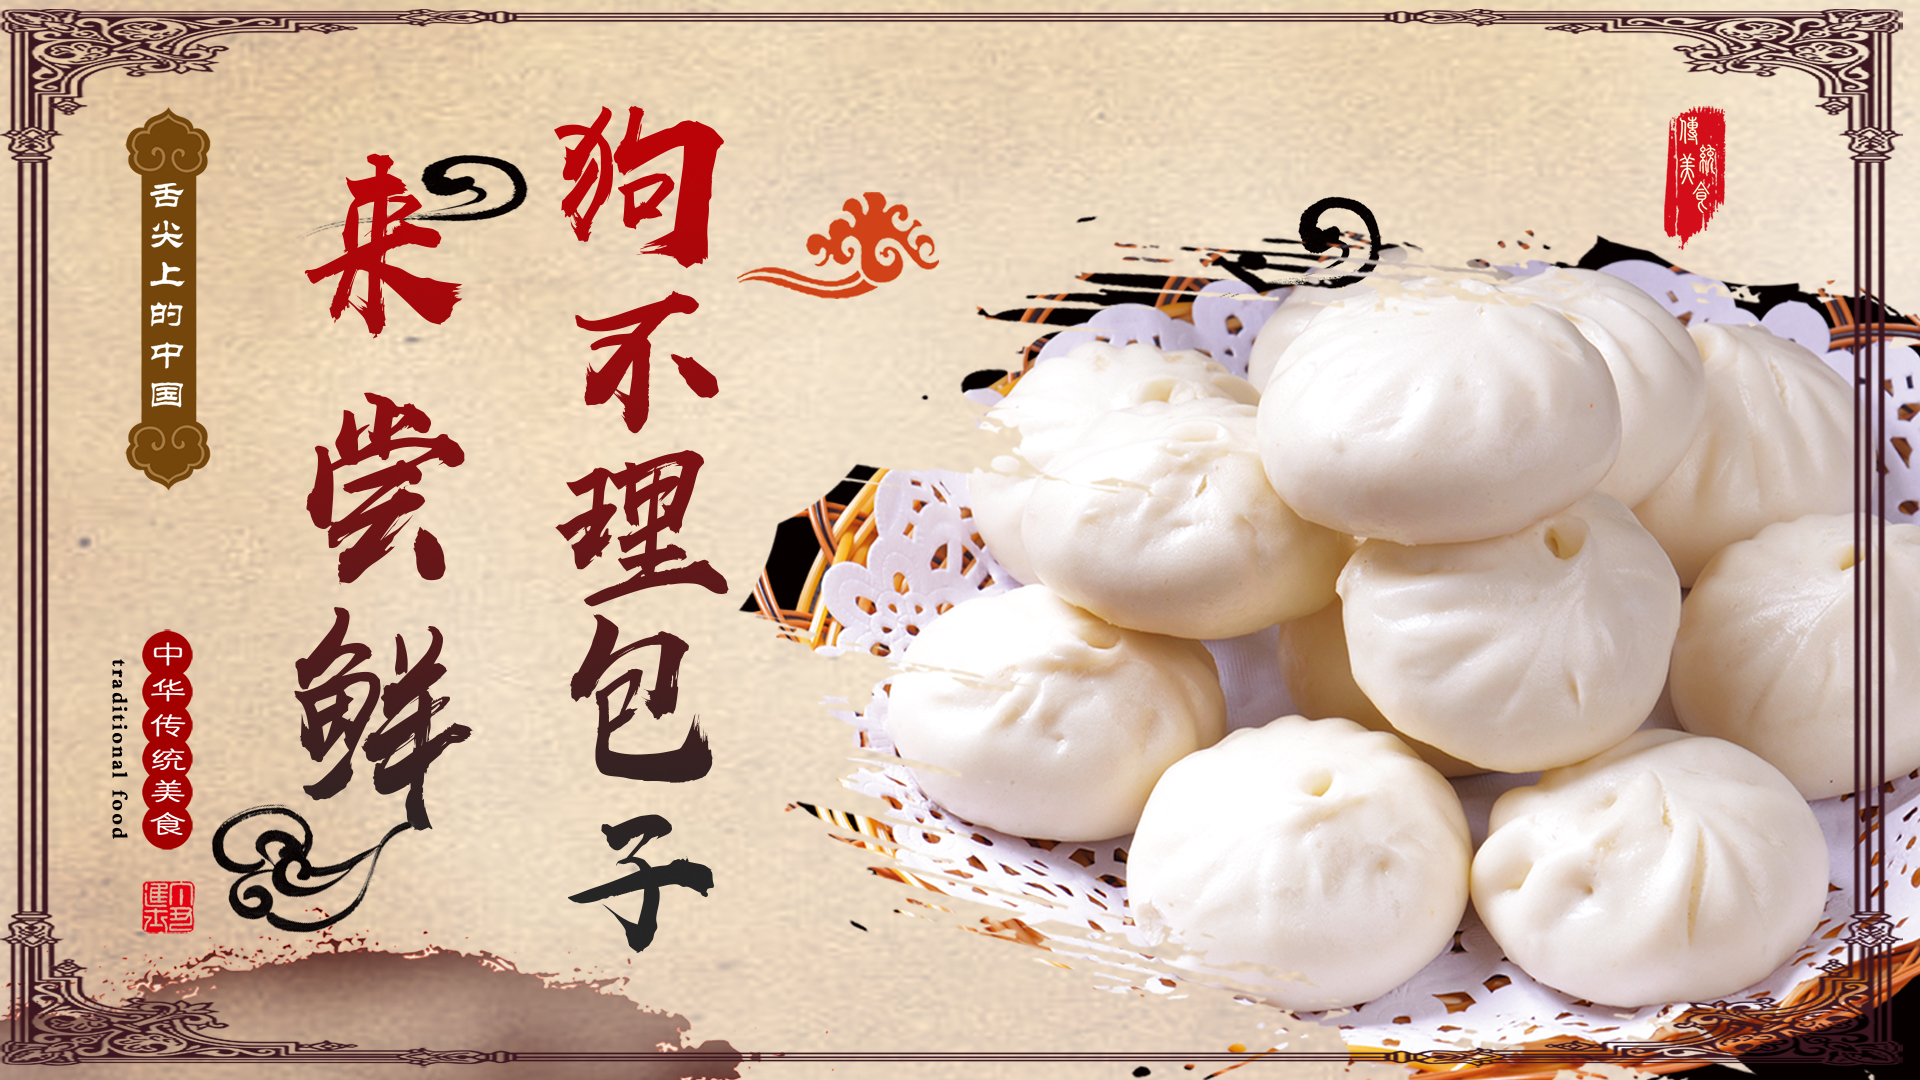 Tianjin Food Culture — Approaching Goubuli Baozi